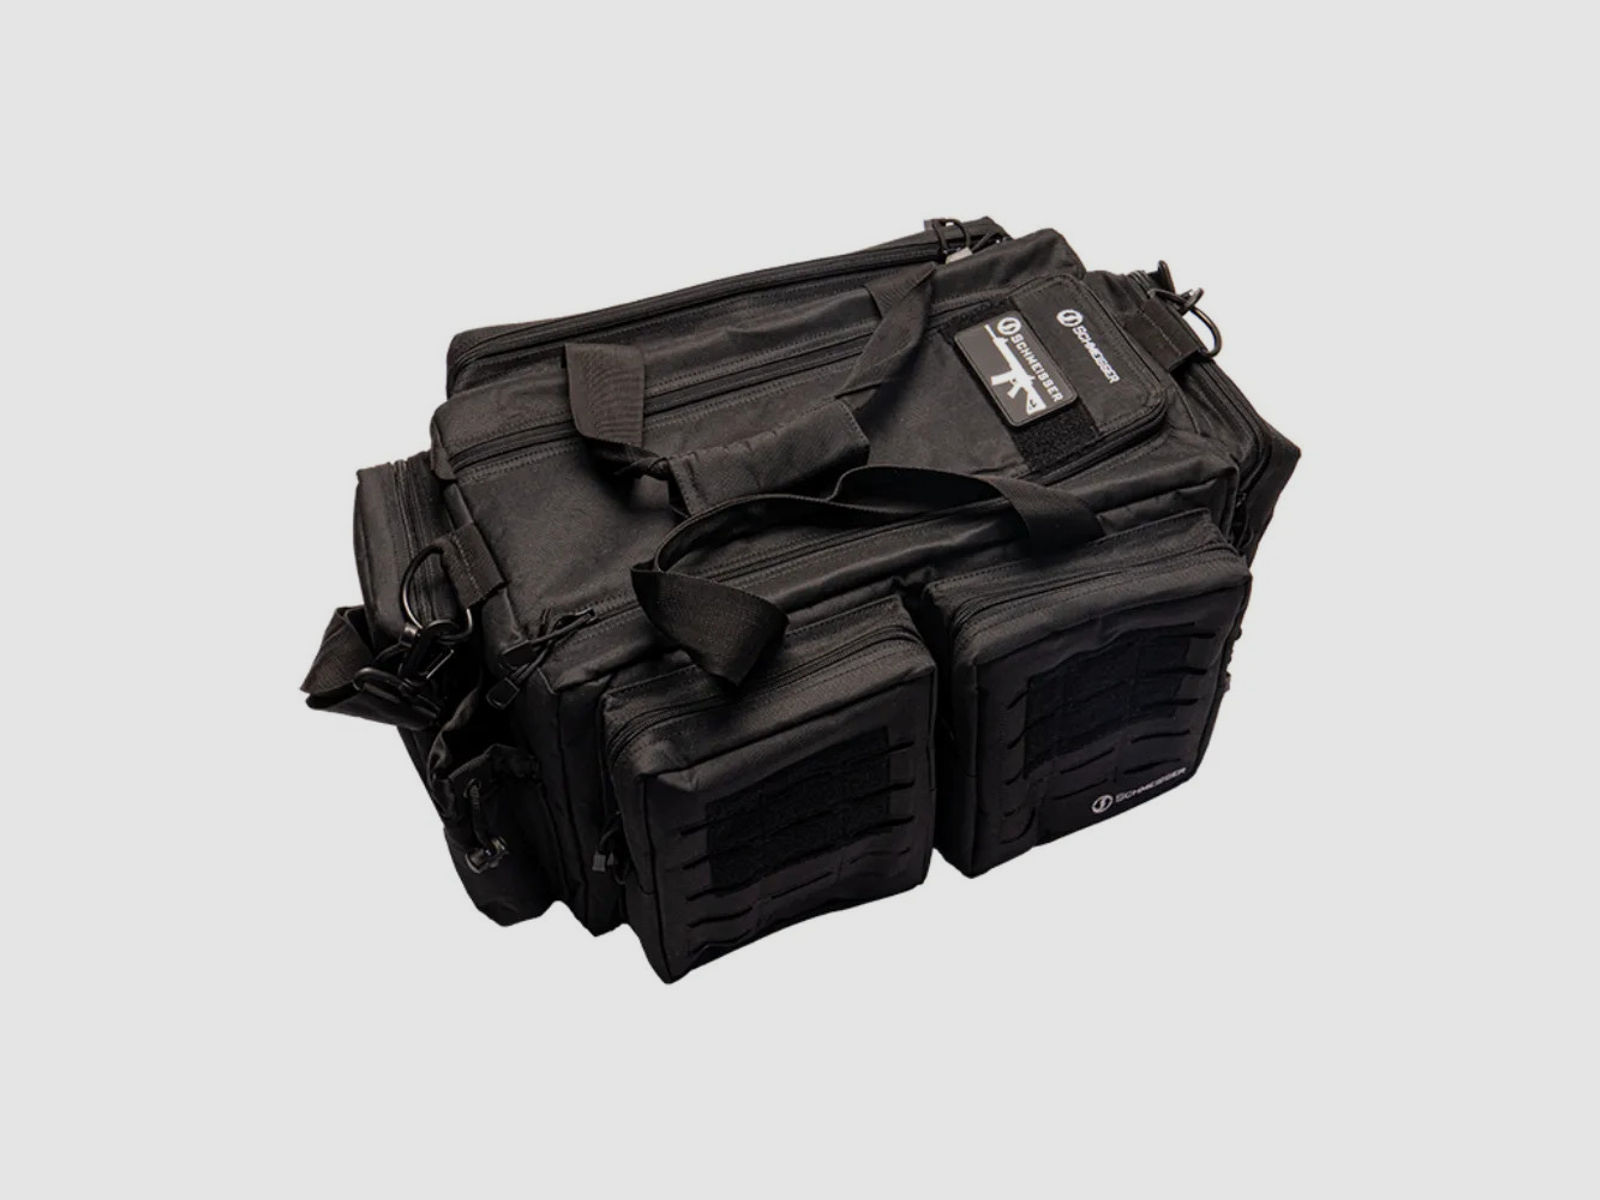 Schmeisser Range Bag Tasche - Schwarz